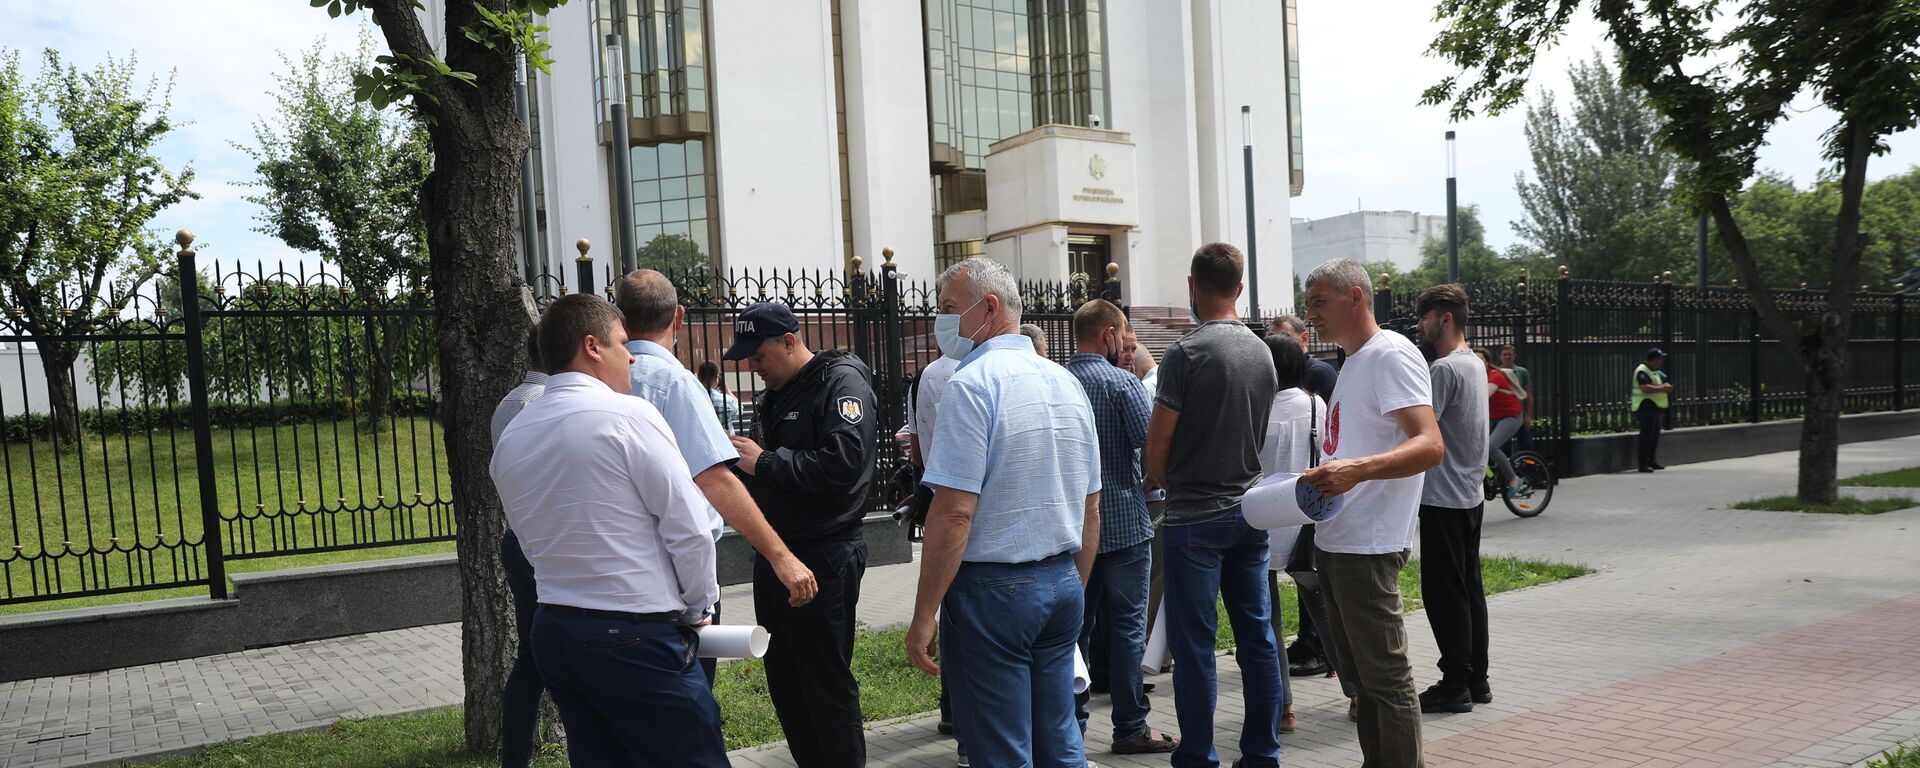 Протест аграриев перед зданием администрации президента Молдовы - Sputnik Молдова, 1920, 01.07.2021